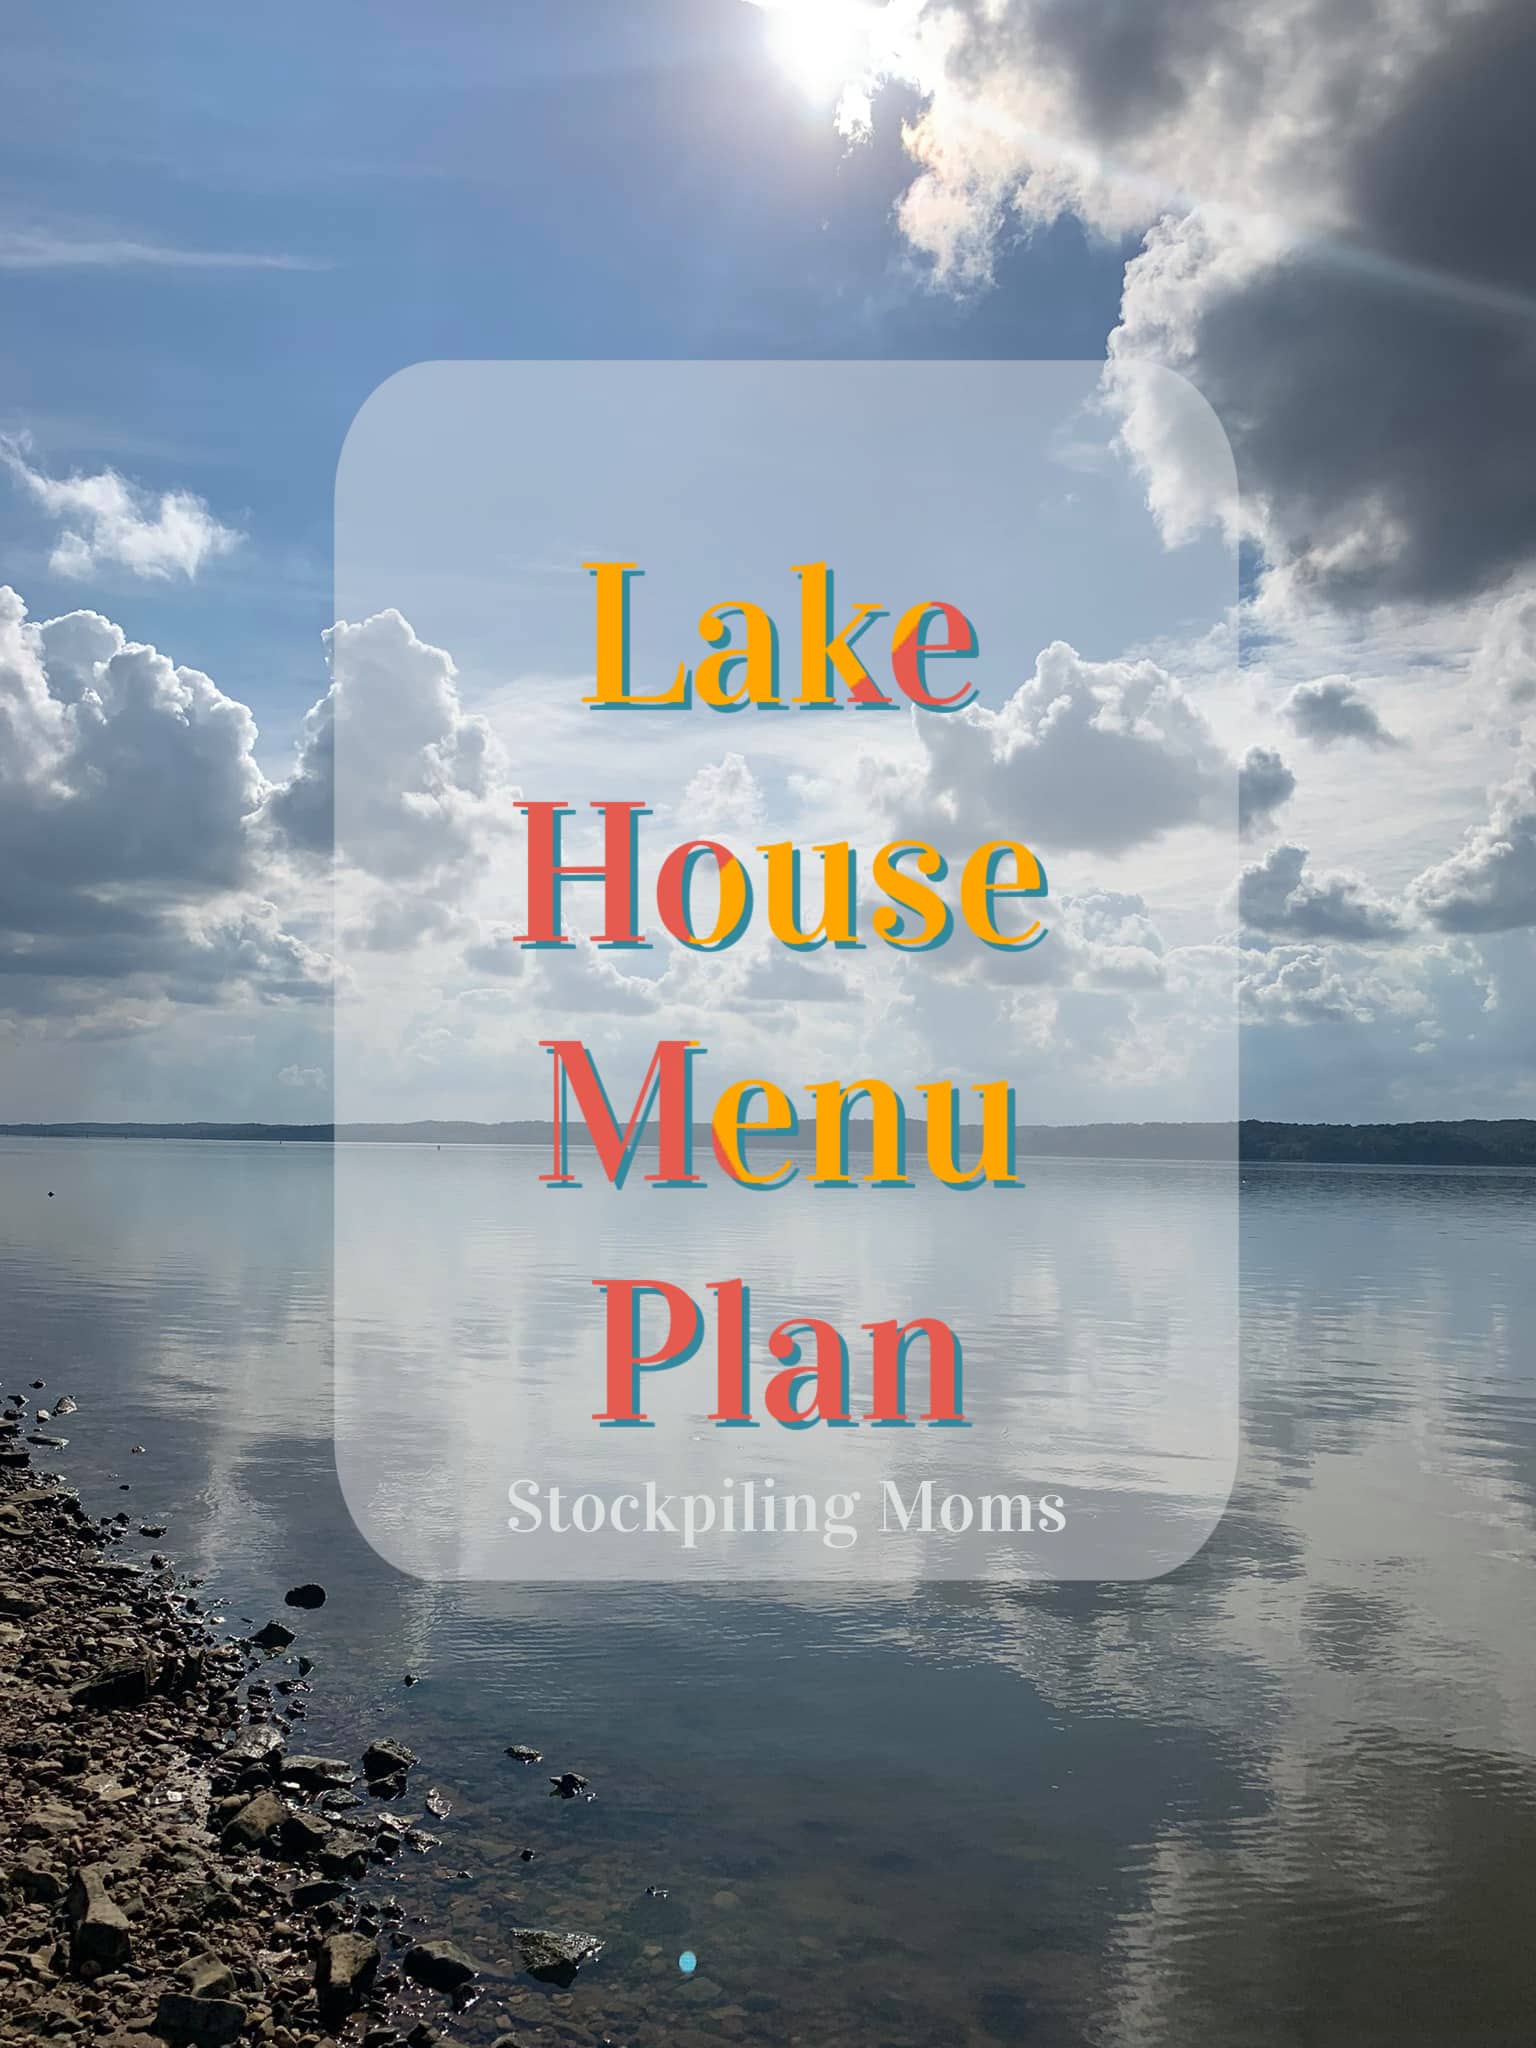 Lake House Menu Plan